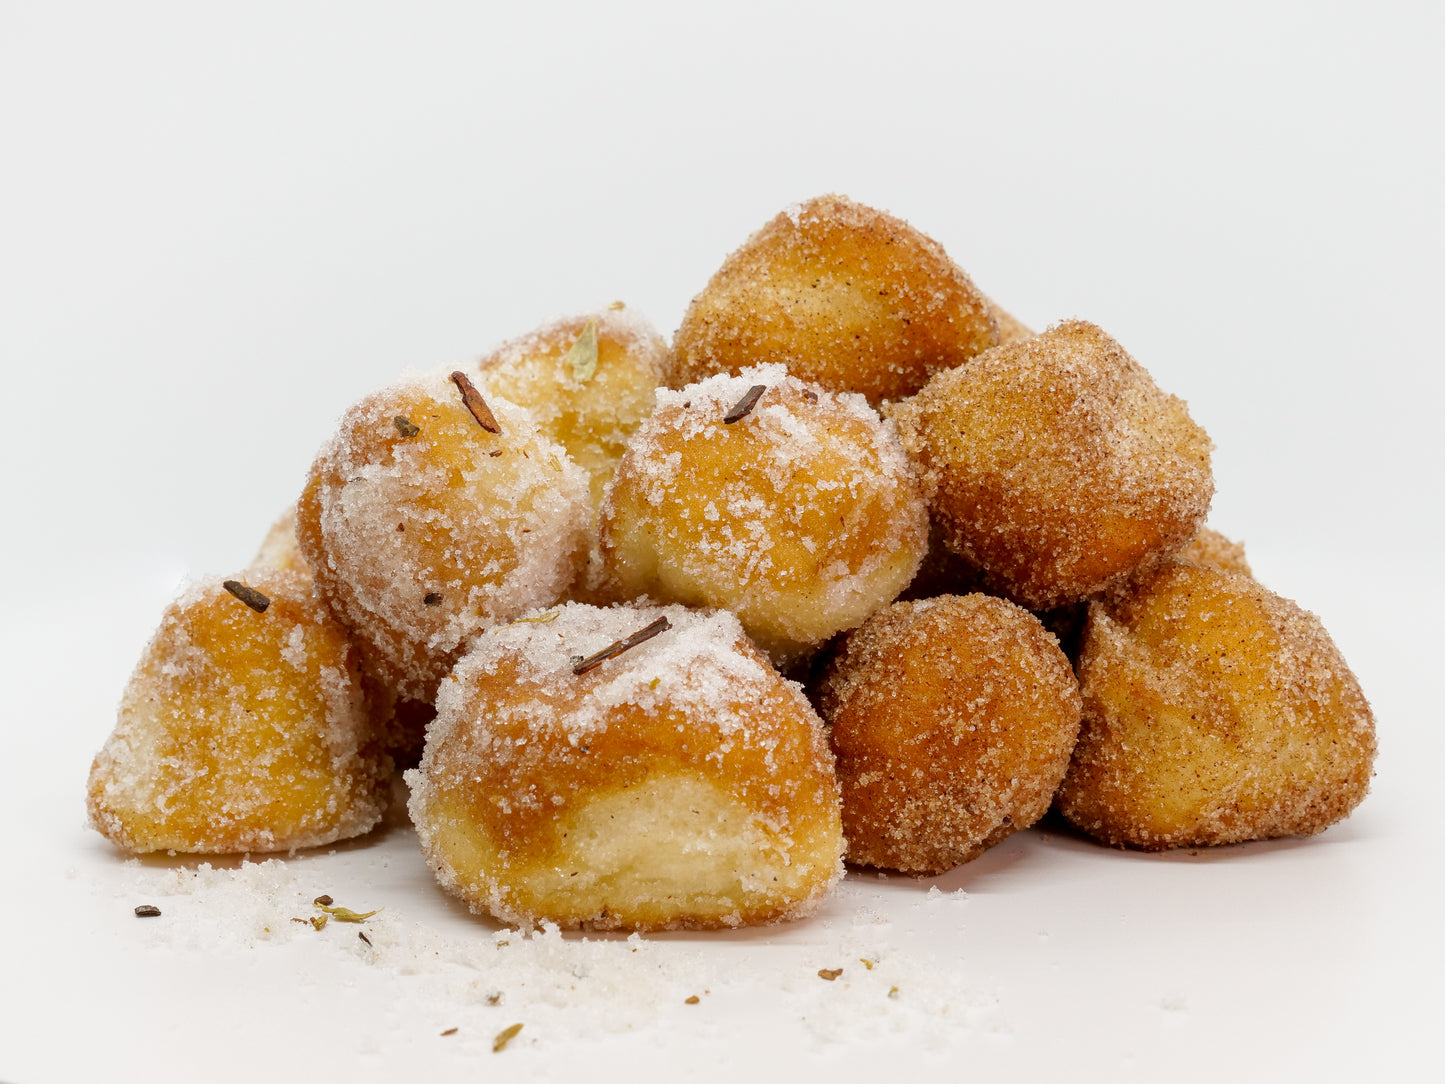 Box of donut holes rolled in cinnamon sugar or chai masala sugar or both